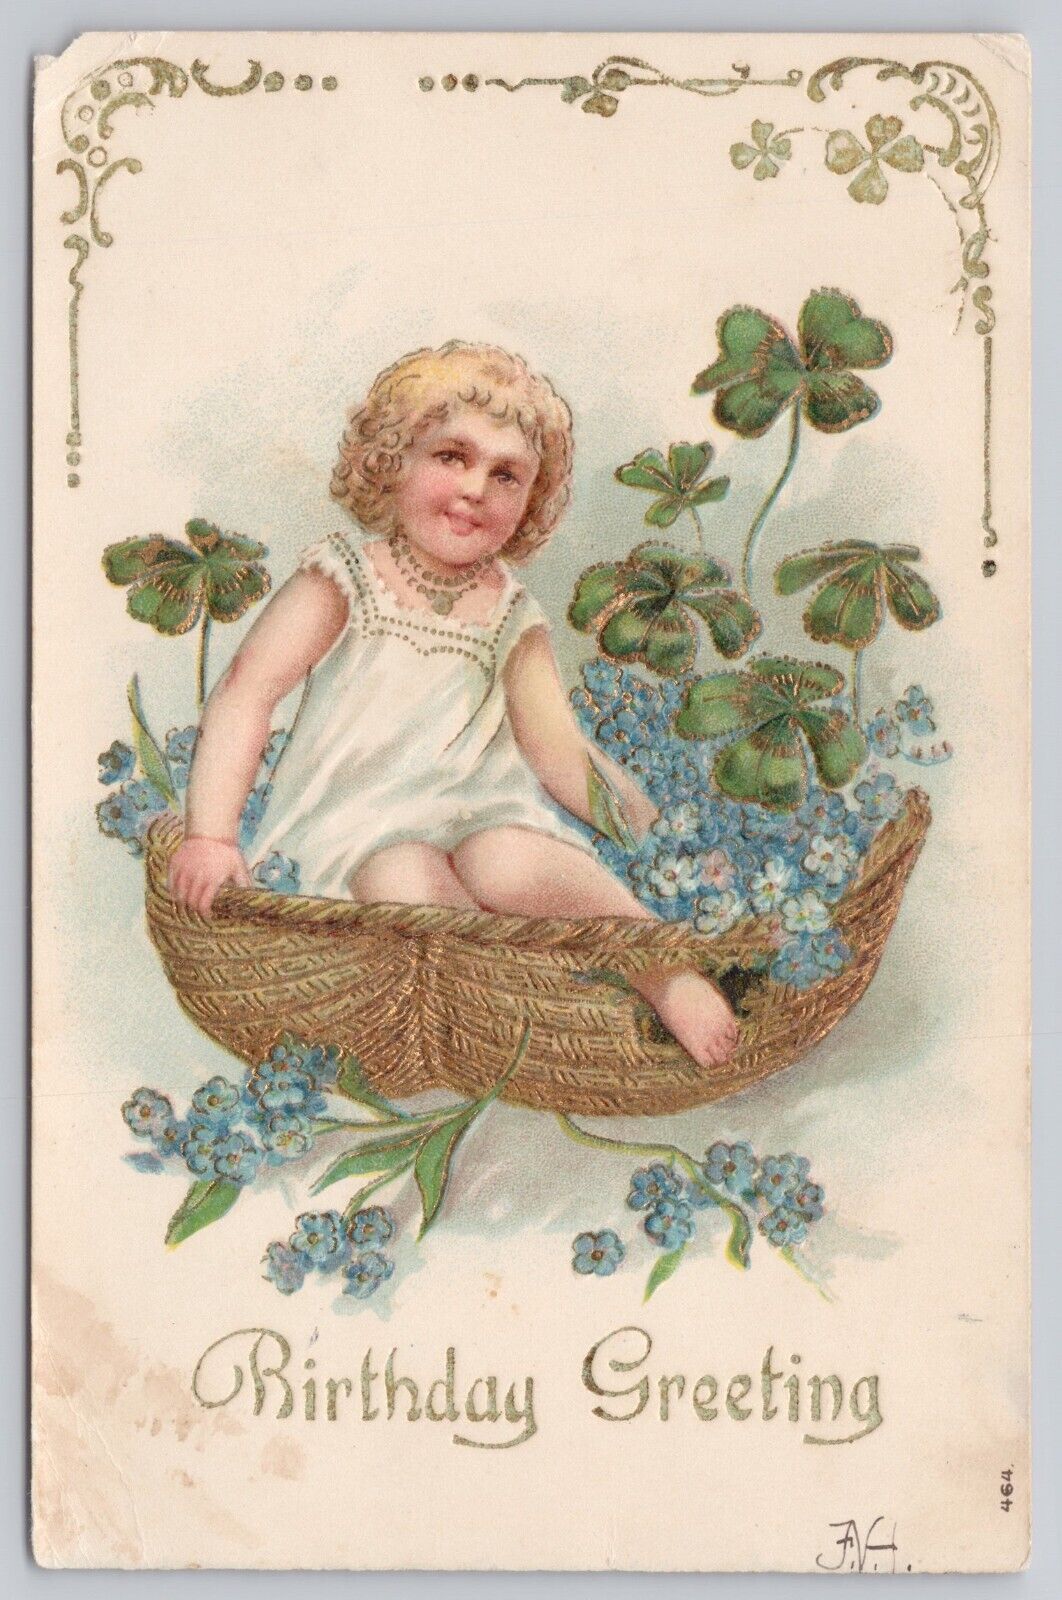 Happy Birthday Greetings, Cute Kid Basket 4 Leaf Clovers, Vintage Postcard